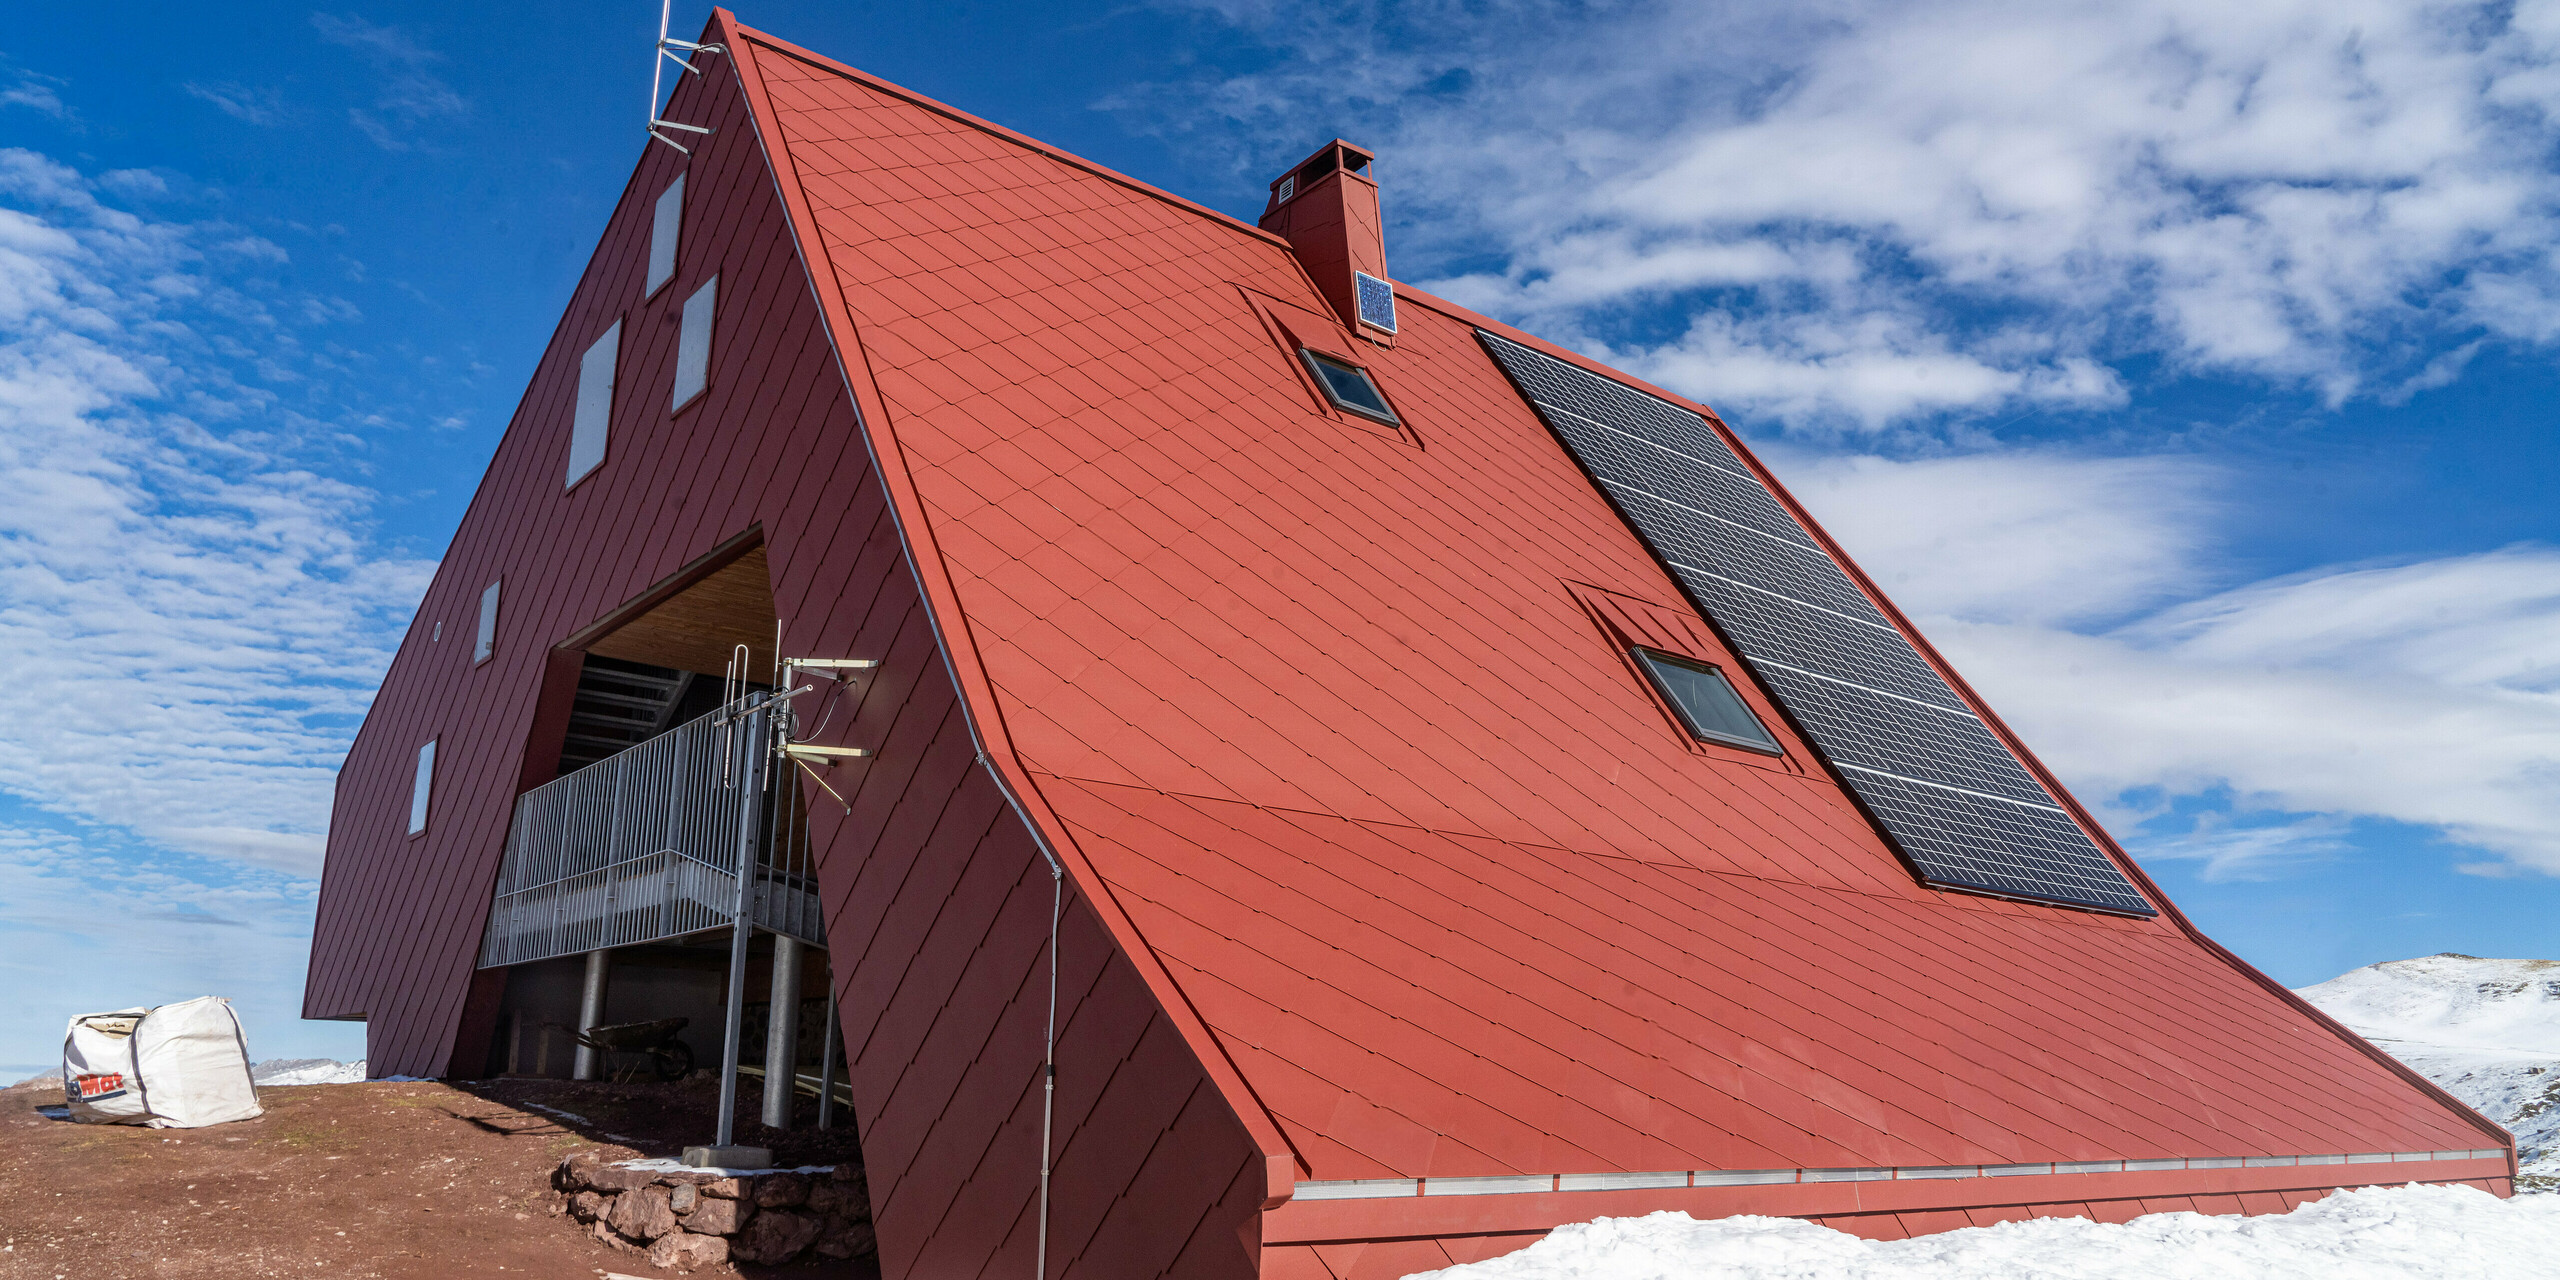 Schutzhütte Arlet im Pyrenäen-Nationalpark mit Gebäudehülle aus Aluminium in der Farbe Oxydrot